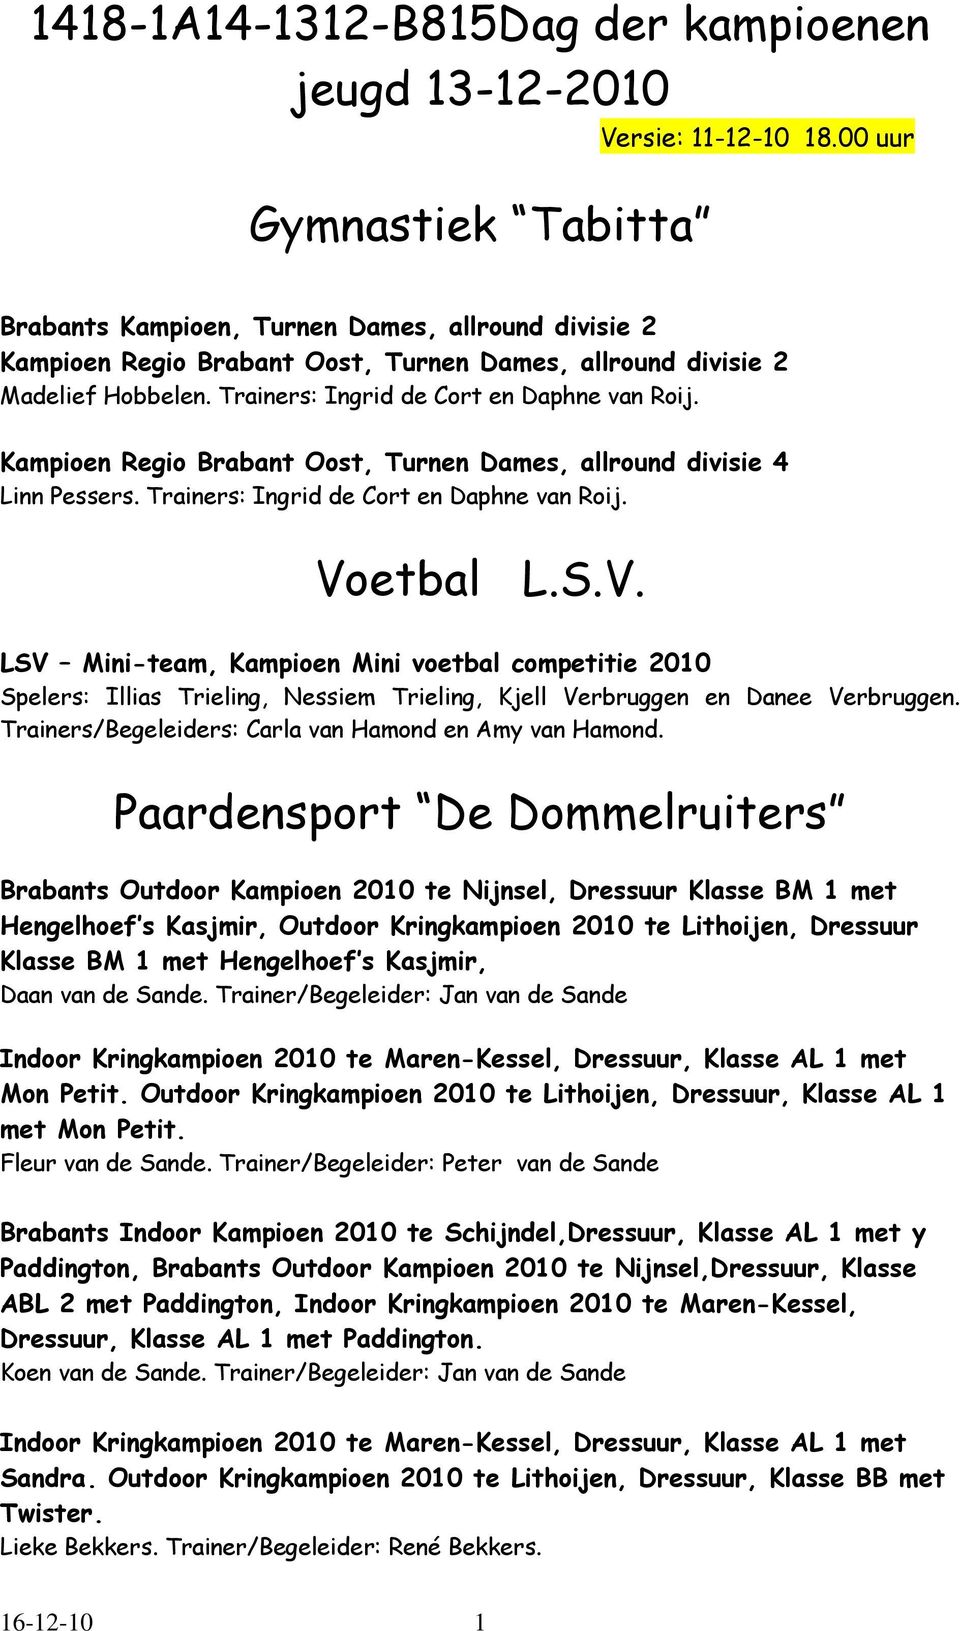 Kampioen Regio Brabant Oost, Turnen Dames, allround divisie 4 Linn Pessers. Trainers: Ingrid de Cort en Daphne van Roij. Vo